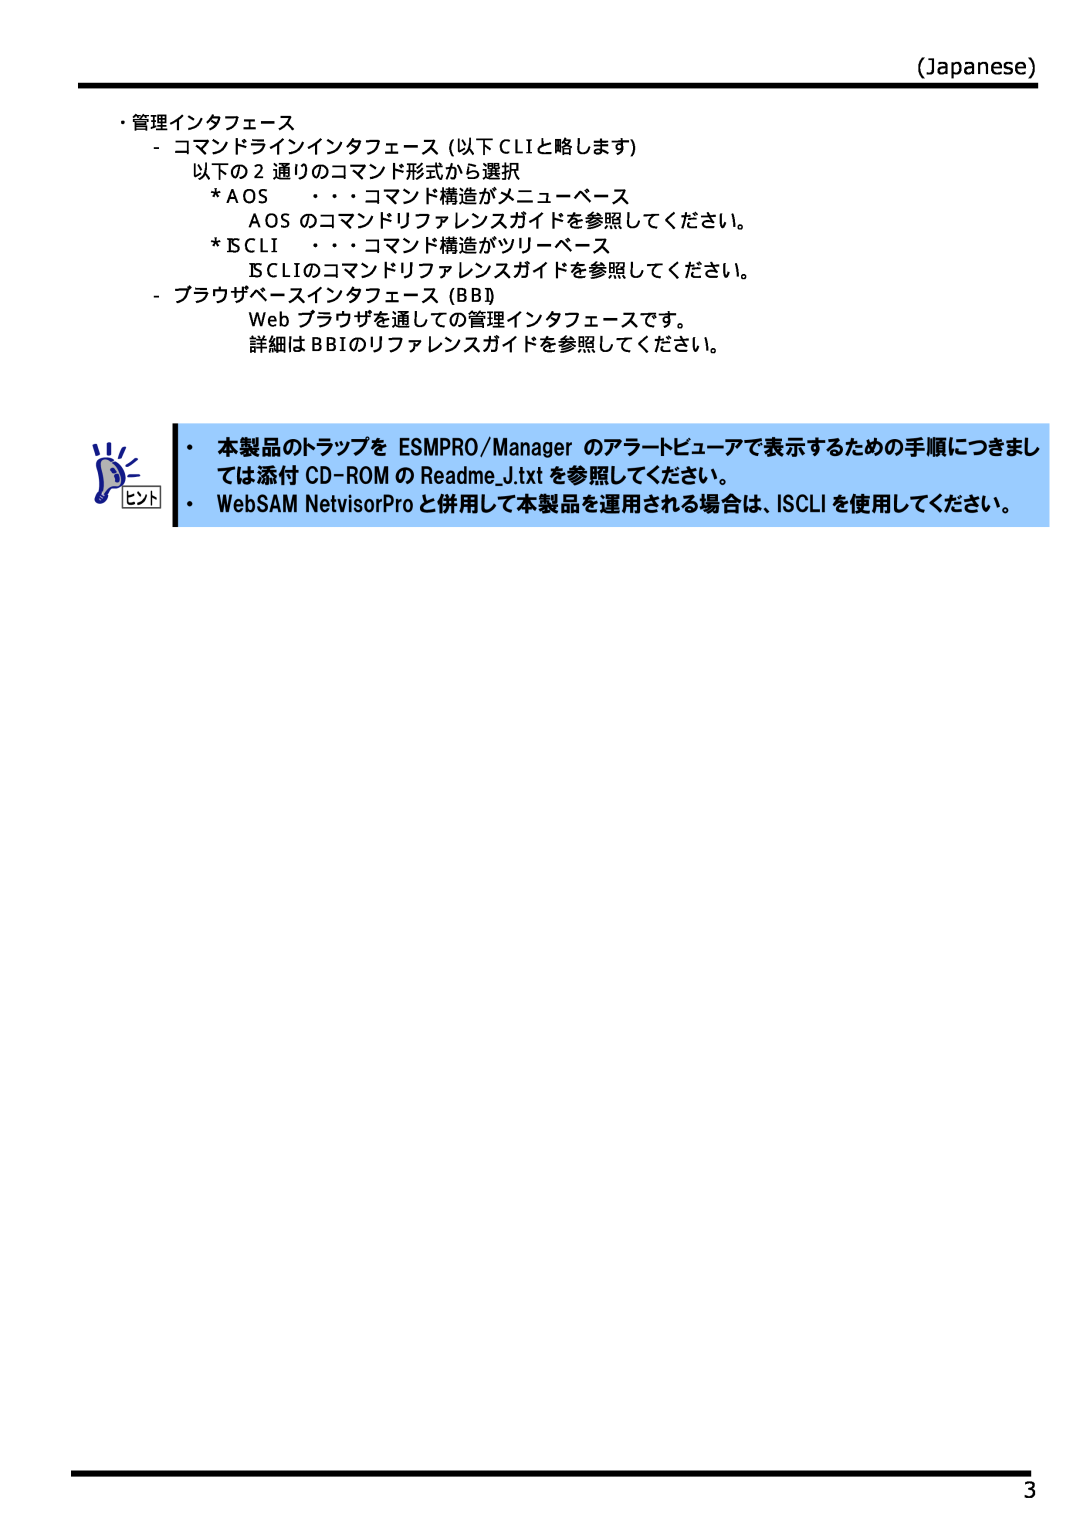 NEC N8406-022 manual Japanese, ・ 本製品のトラップを ESMPRO/Manager のアラートビューアで表示するための手順につきまし, ては添付 CD-ROM の ReadmeJ.txt を参照してください。 